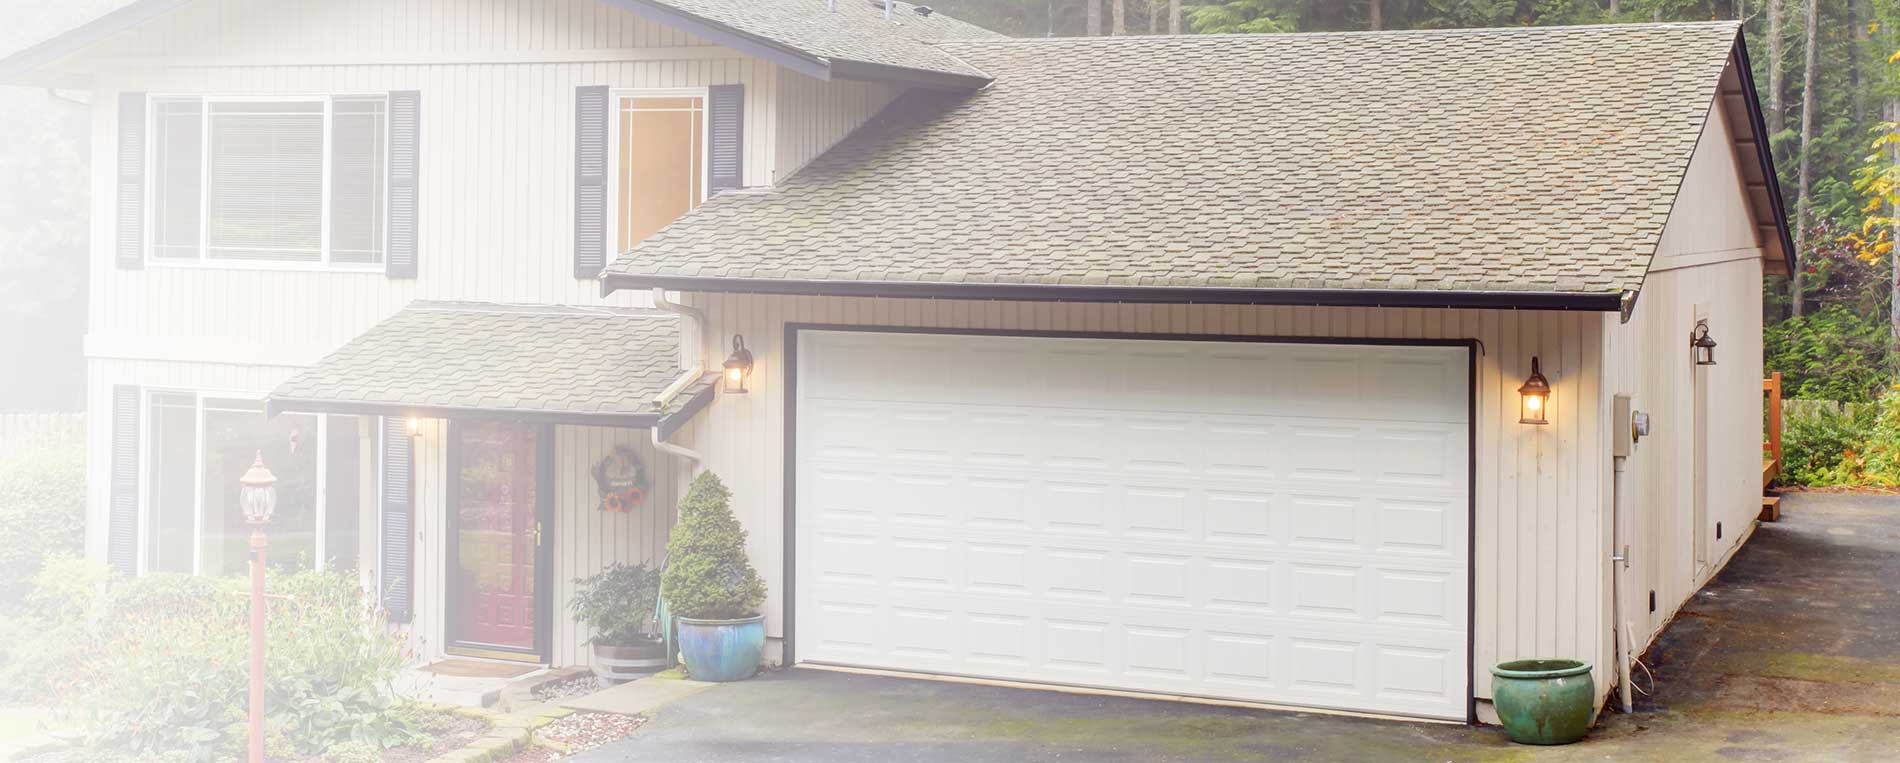 Garage Door Repair Wellington, How Often Should You Have Your Garage Door Serviced